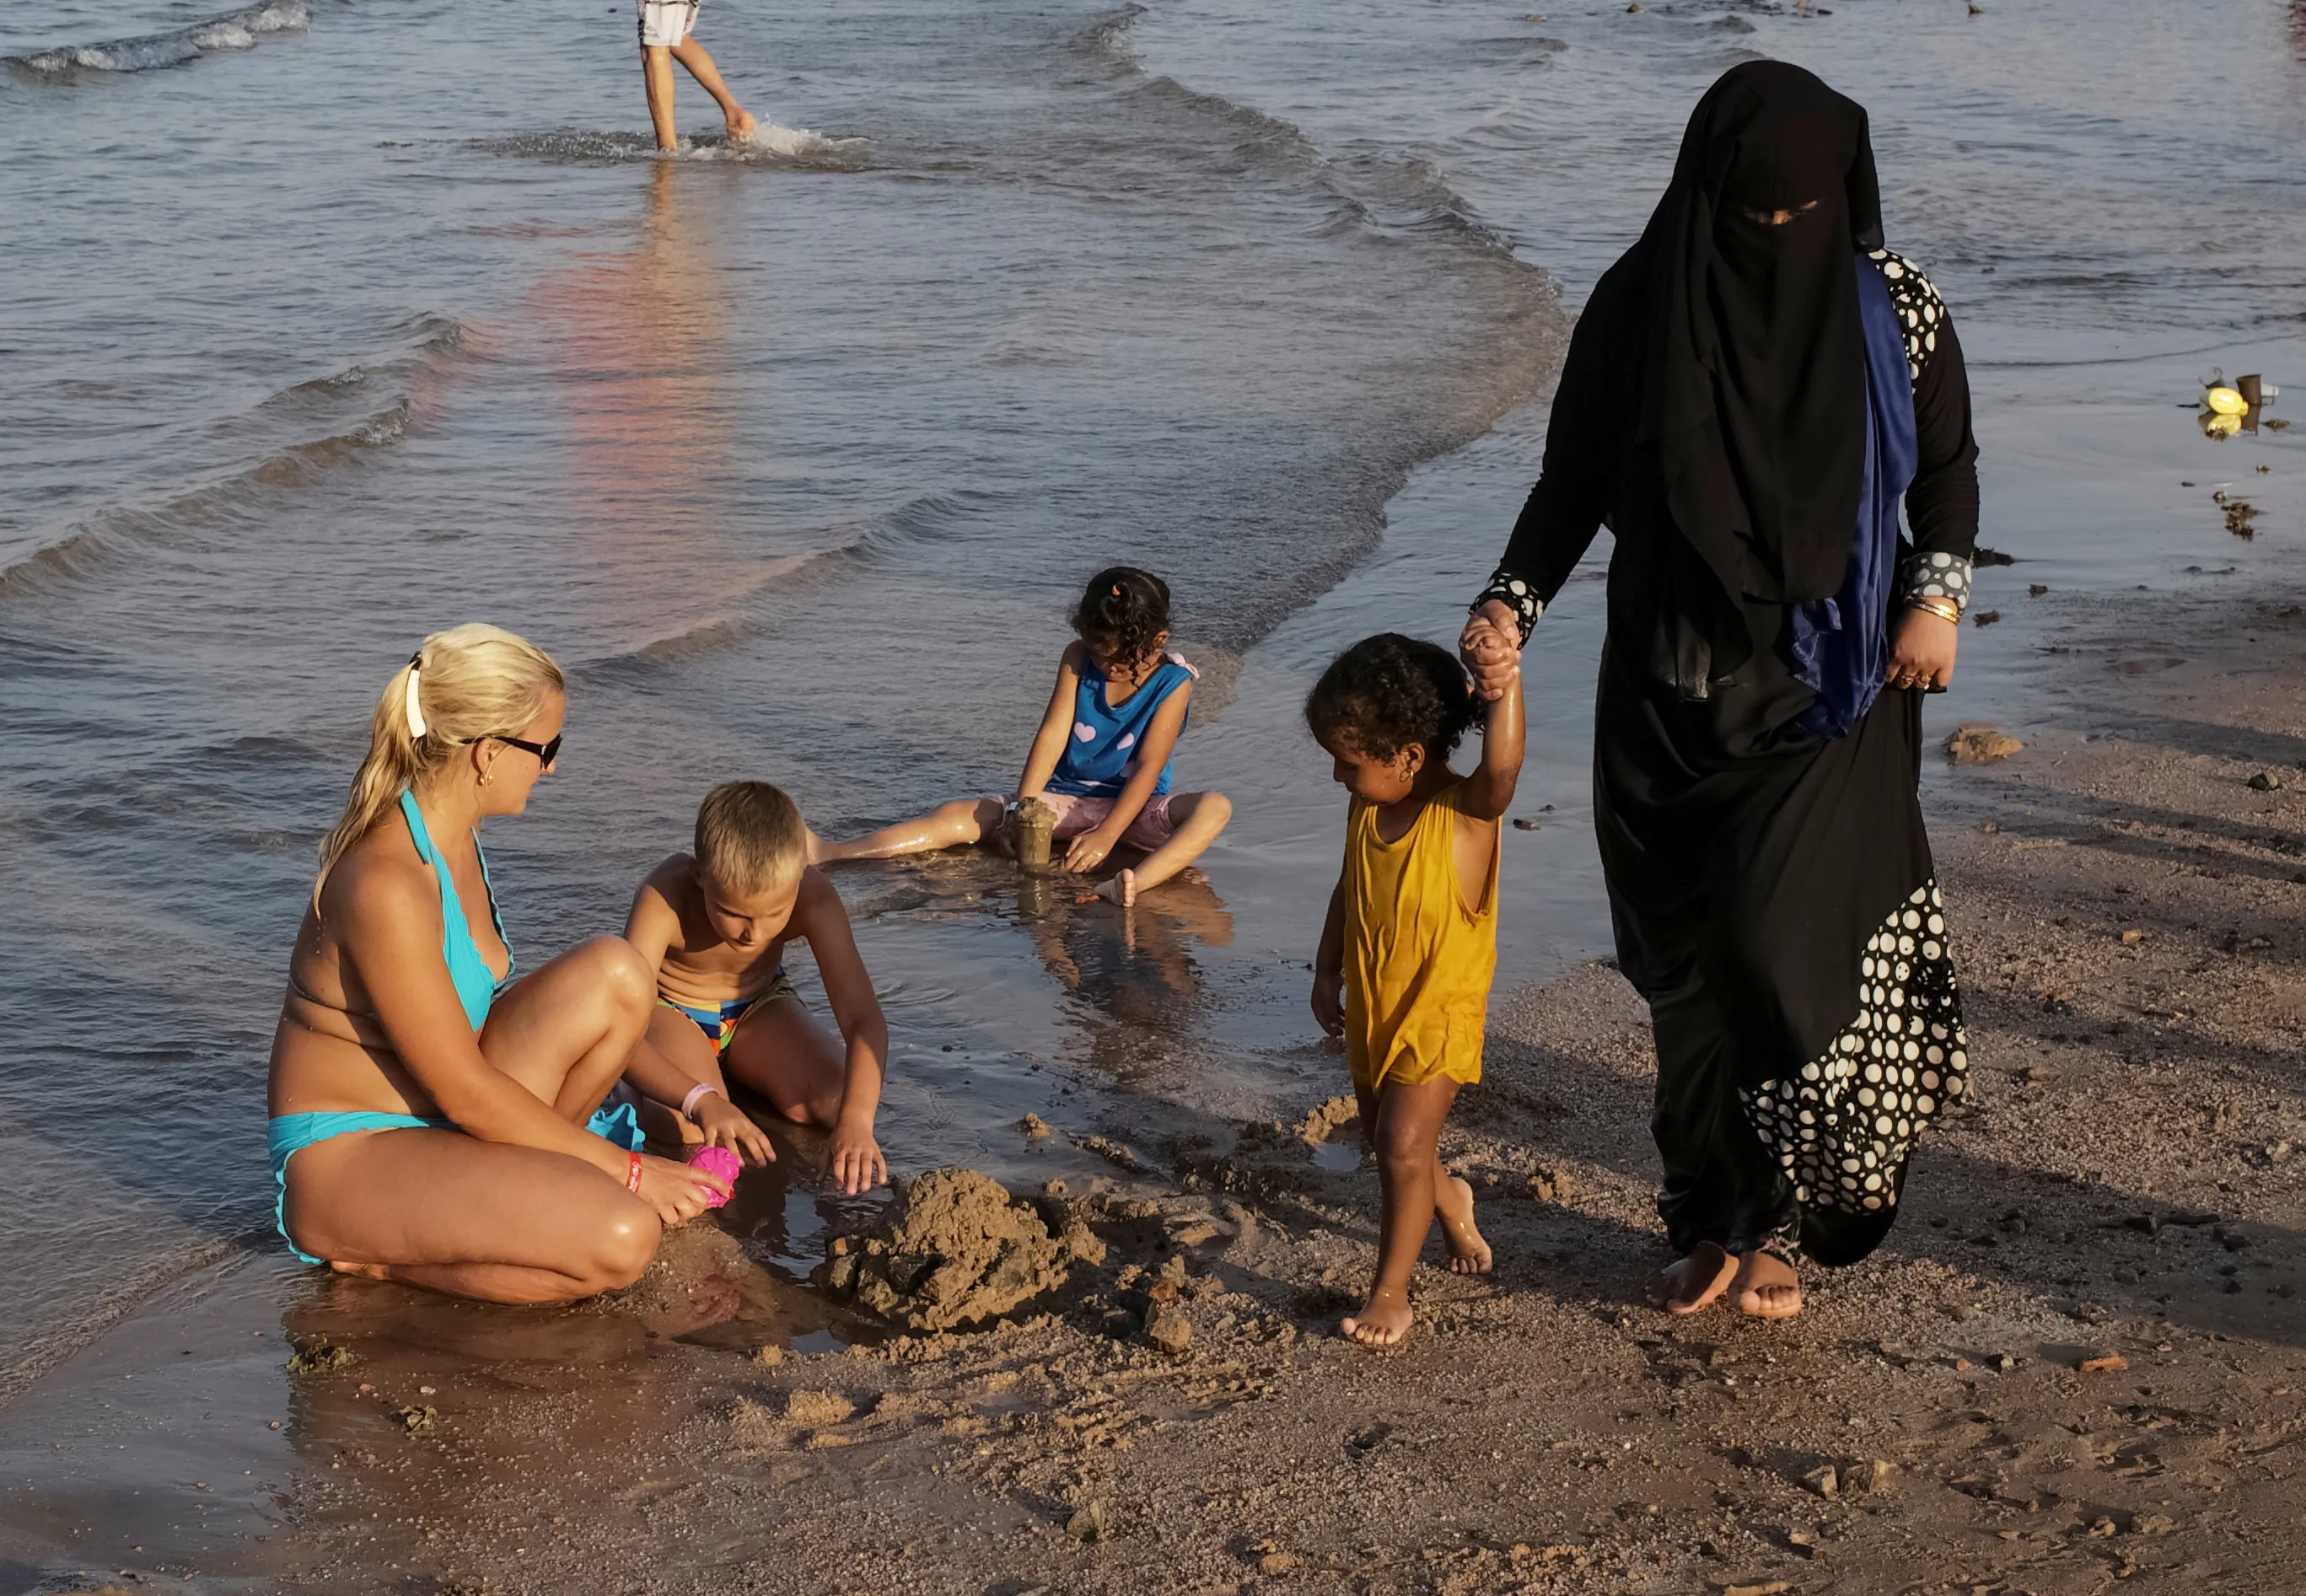 Купания страна. Буркини Хургада. Египет люди на пляже. Египет пляж дети. Египетские девушки на пляже.